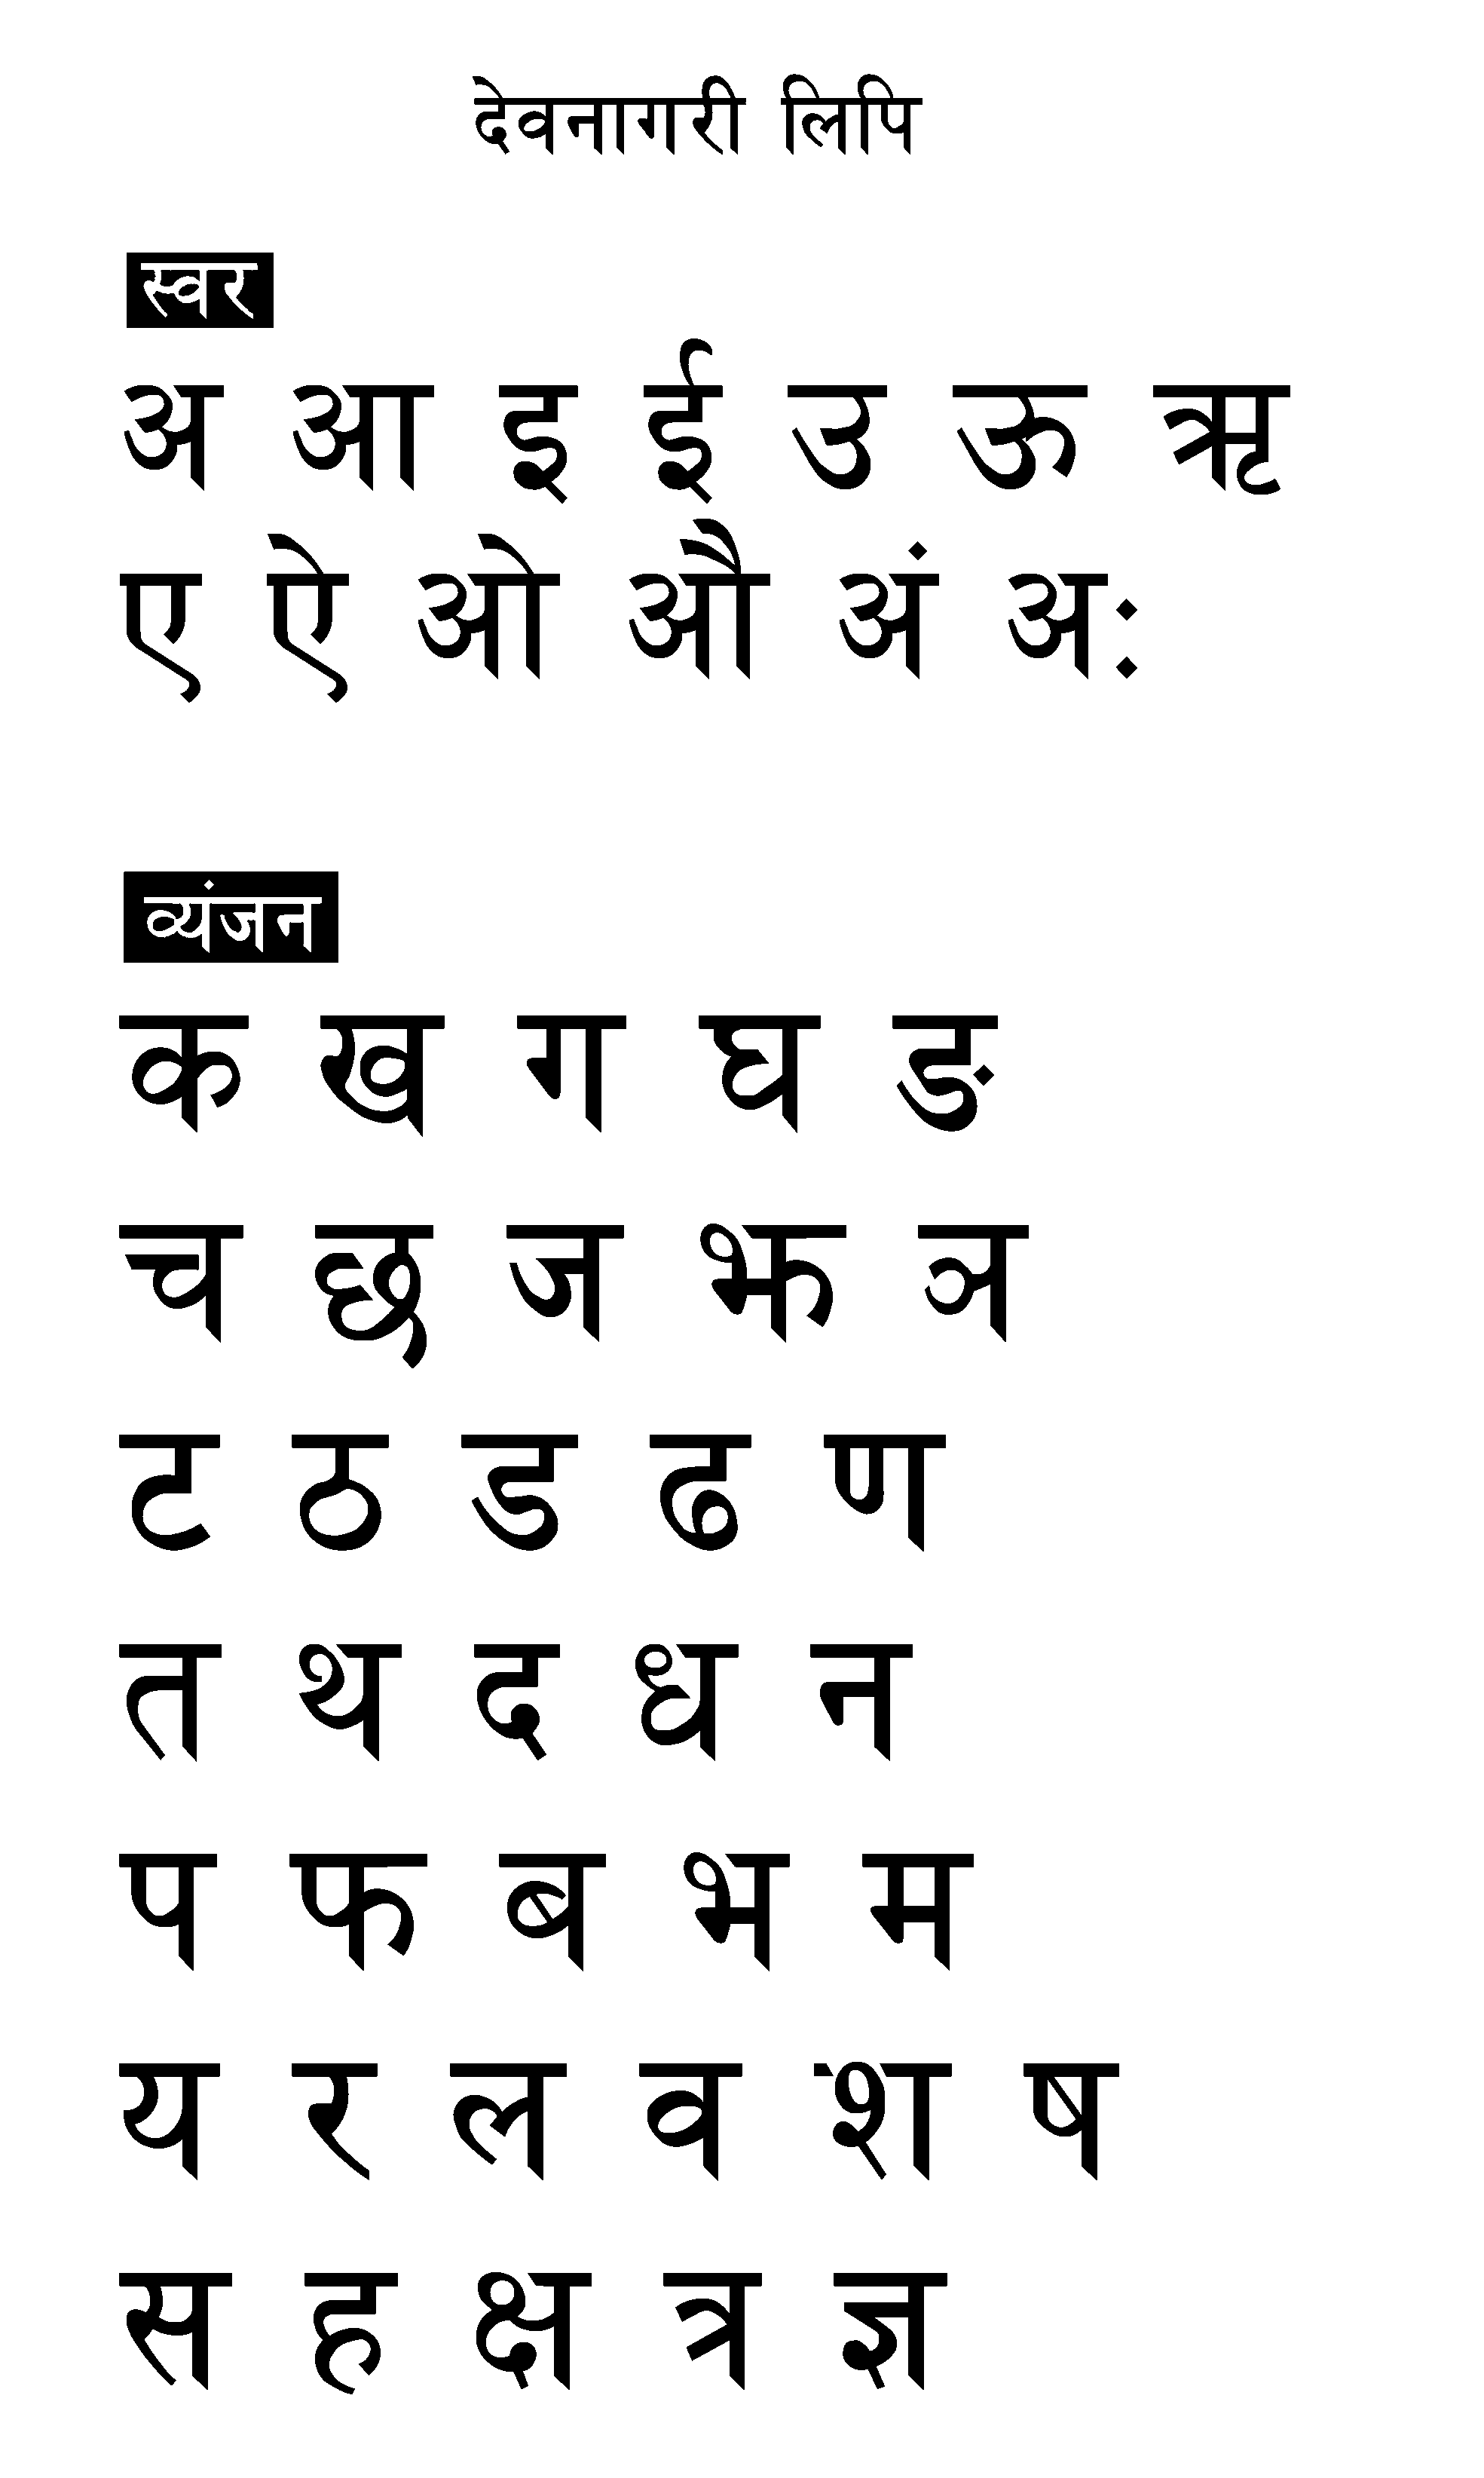 Devnagari alphabets chart PNG